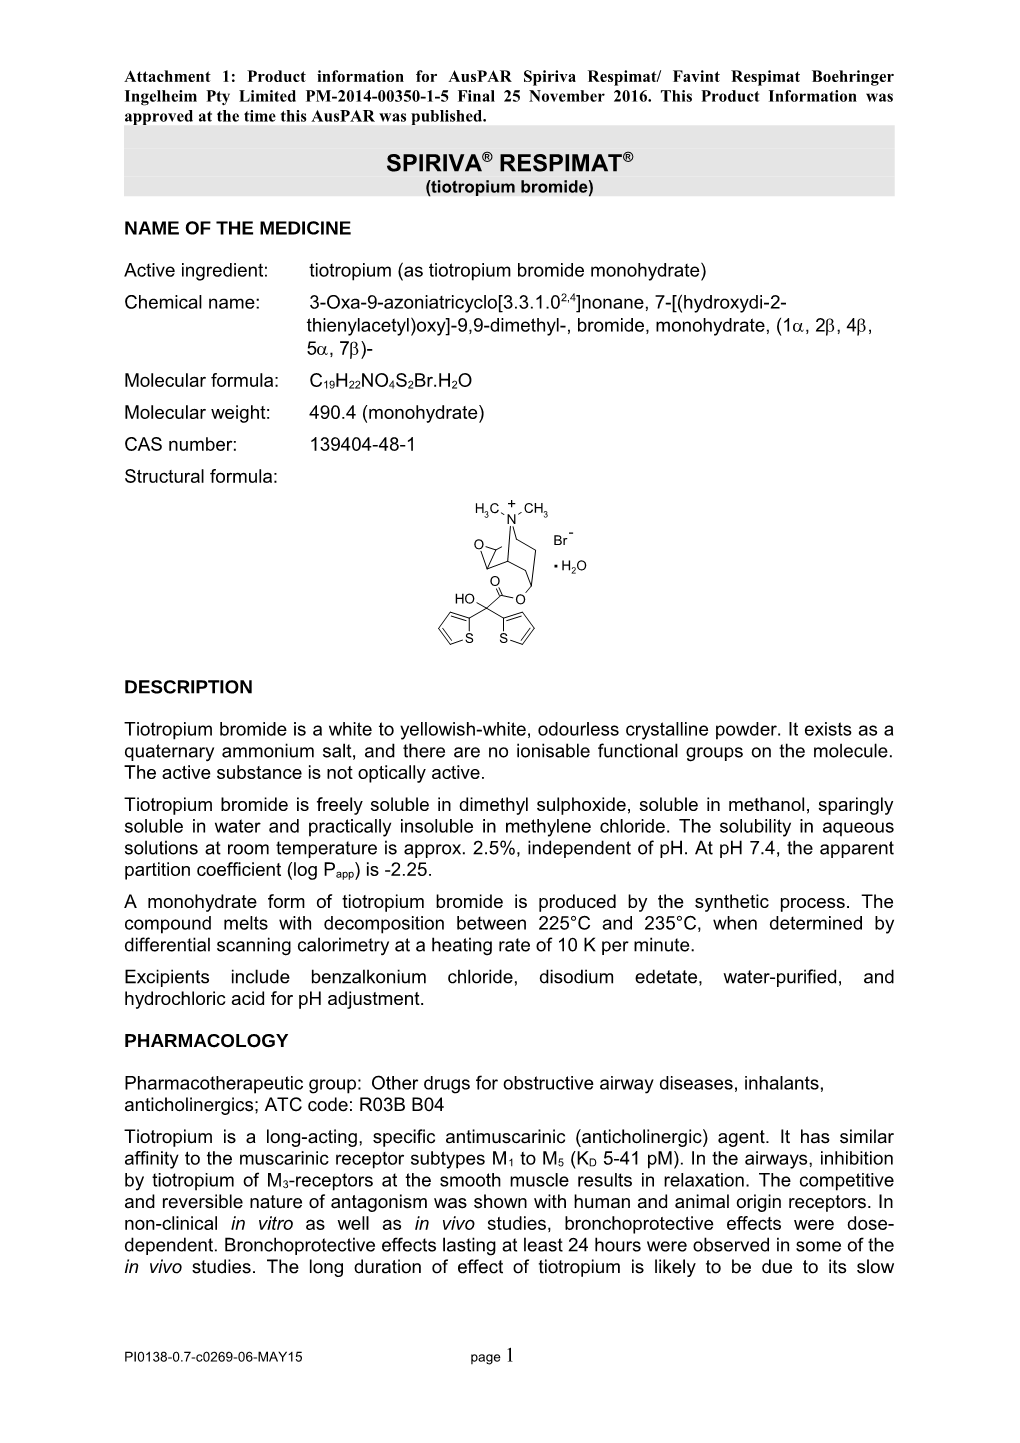 Attachment: Product Information: Tiotropium Bromide